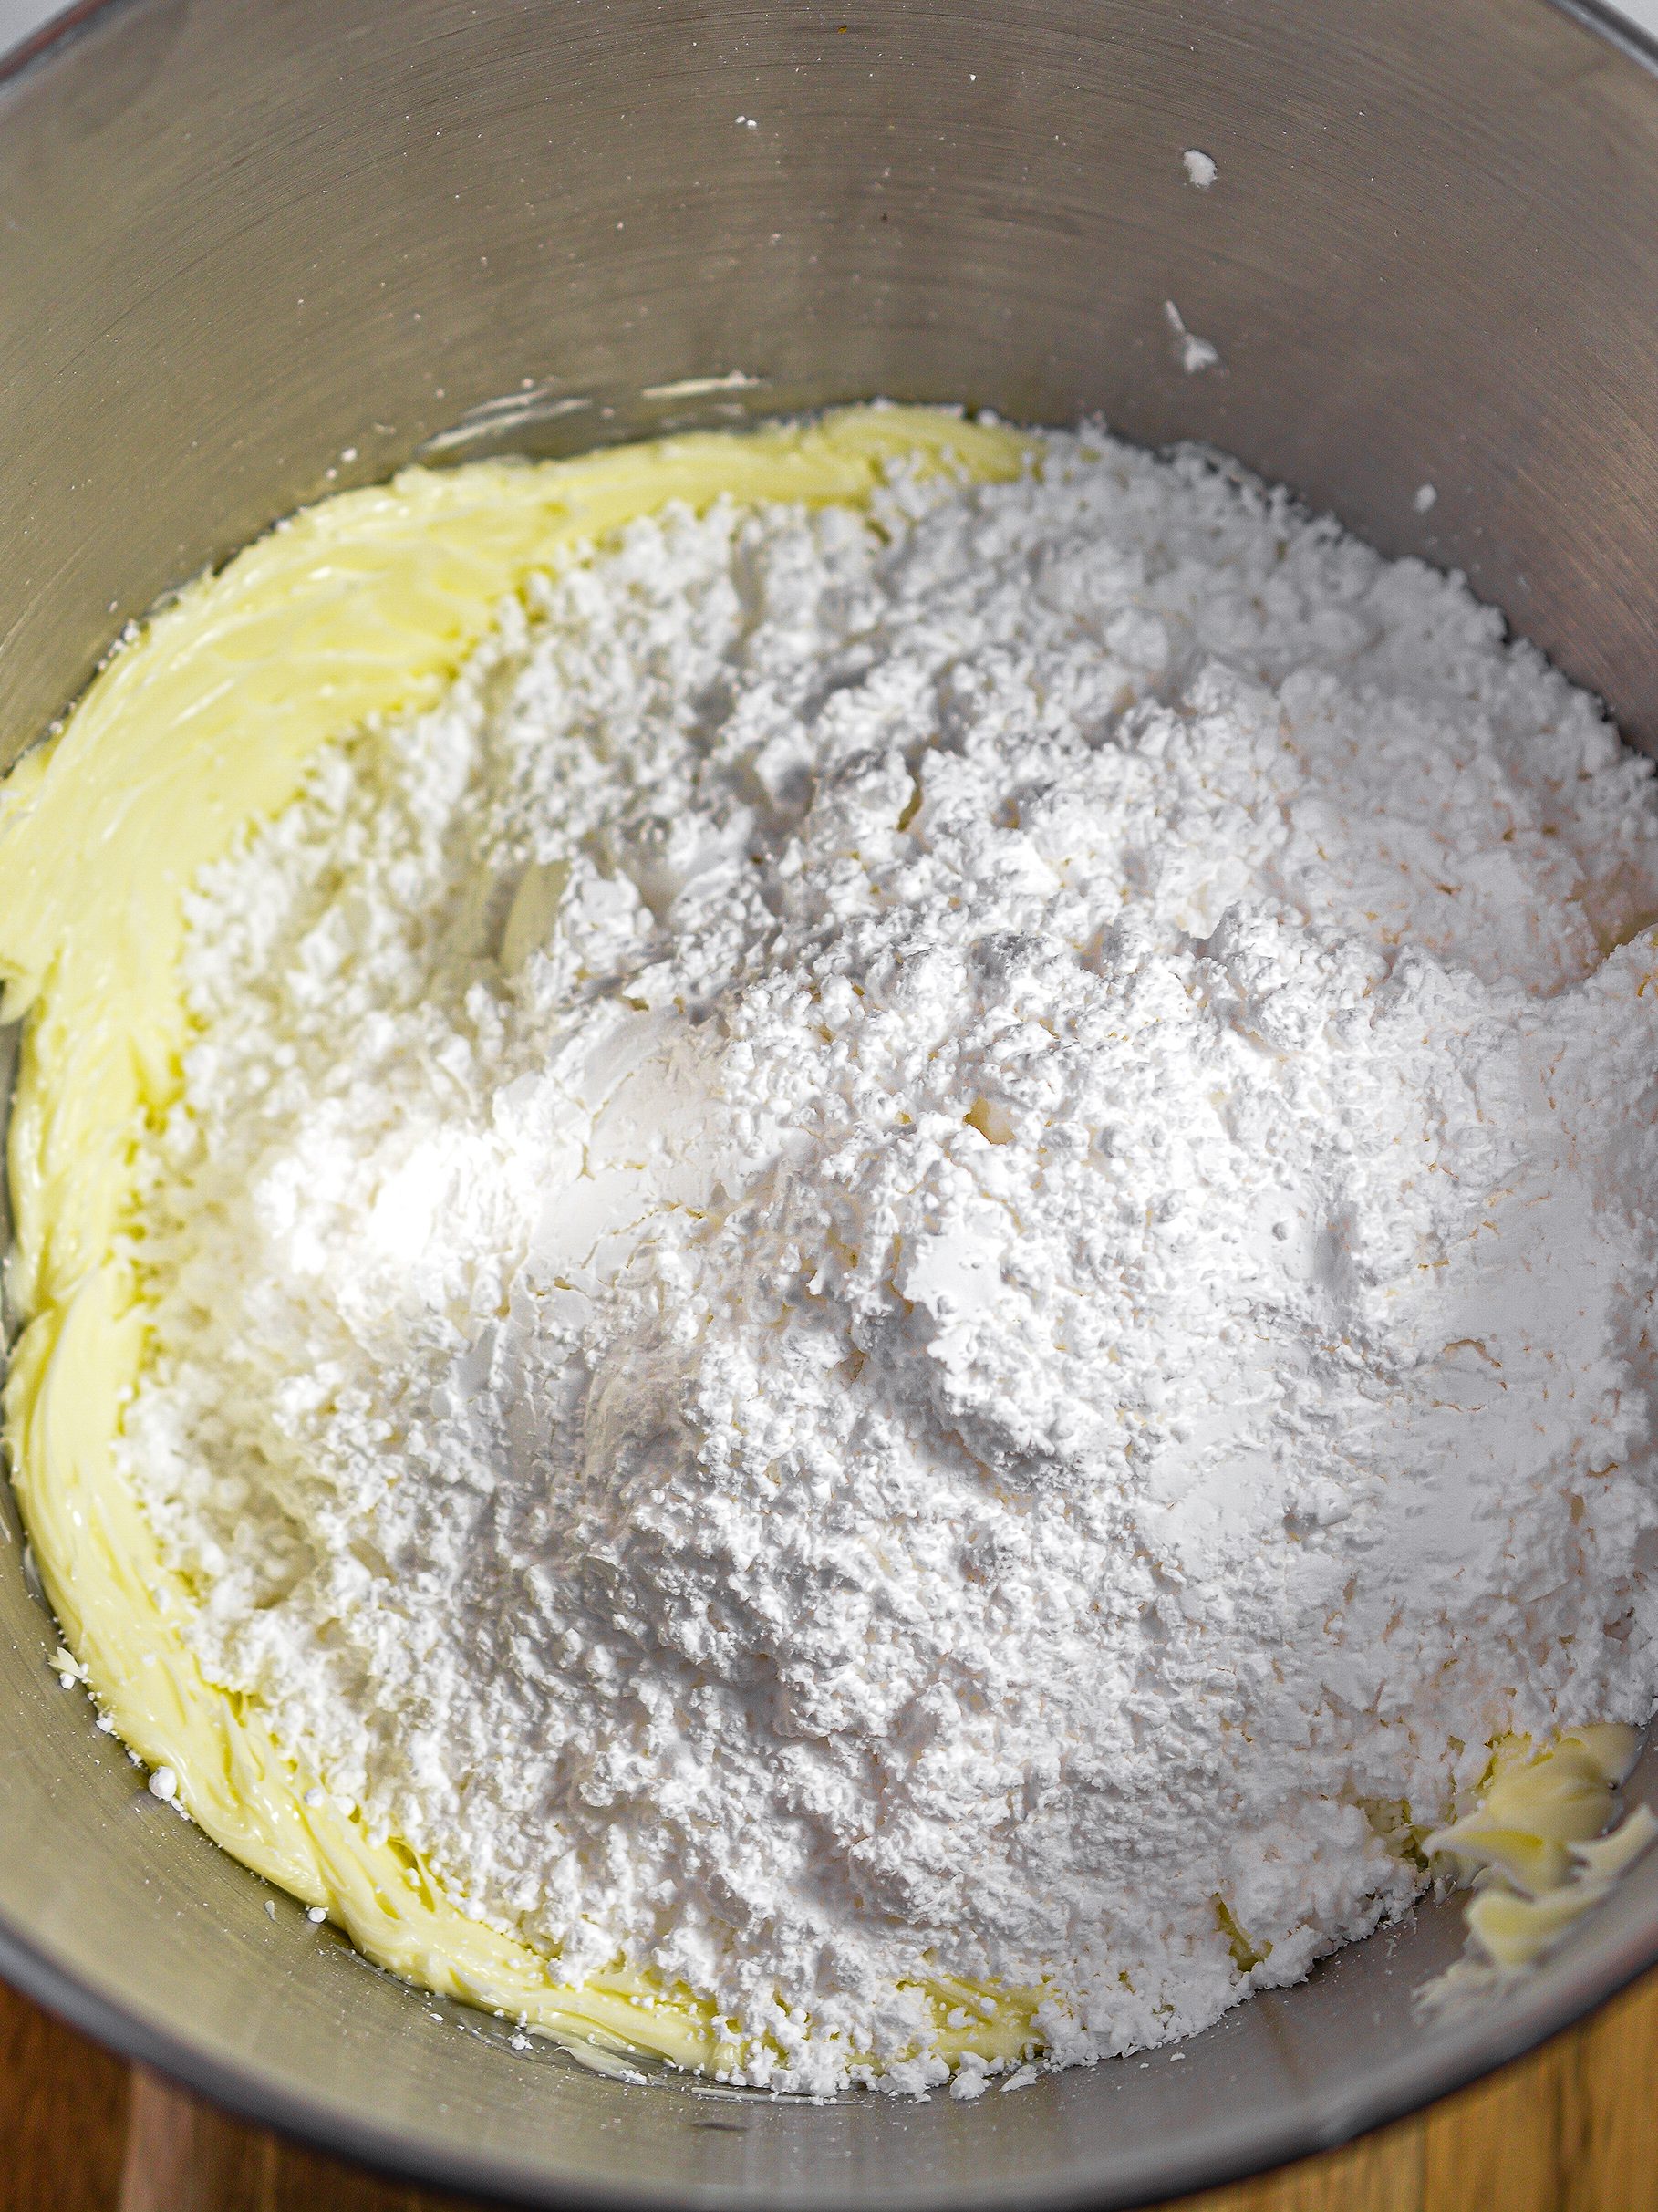 Add the powdered sugar.